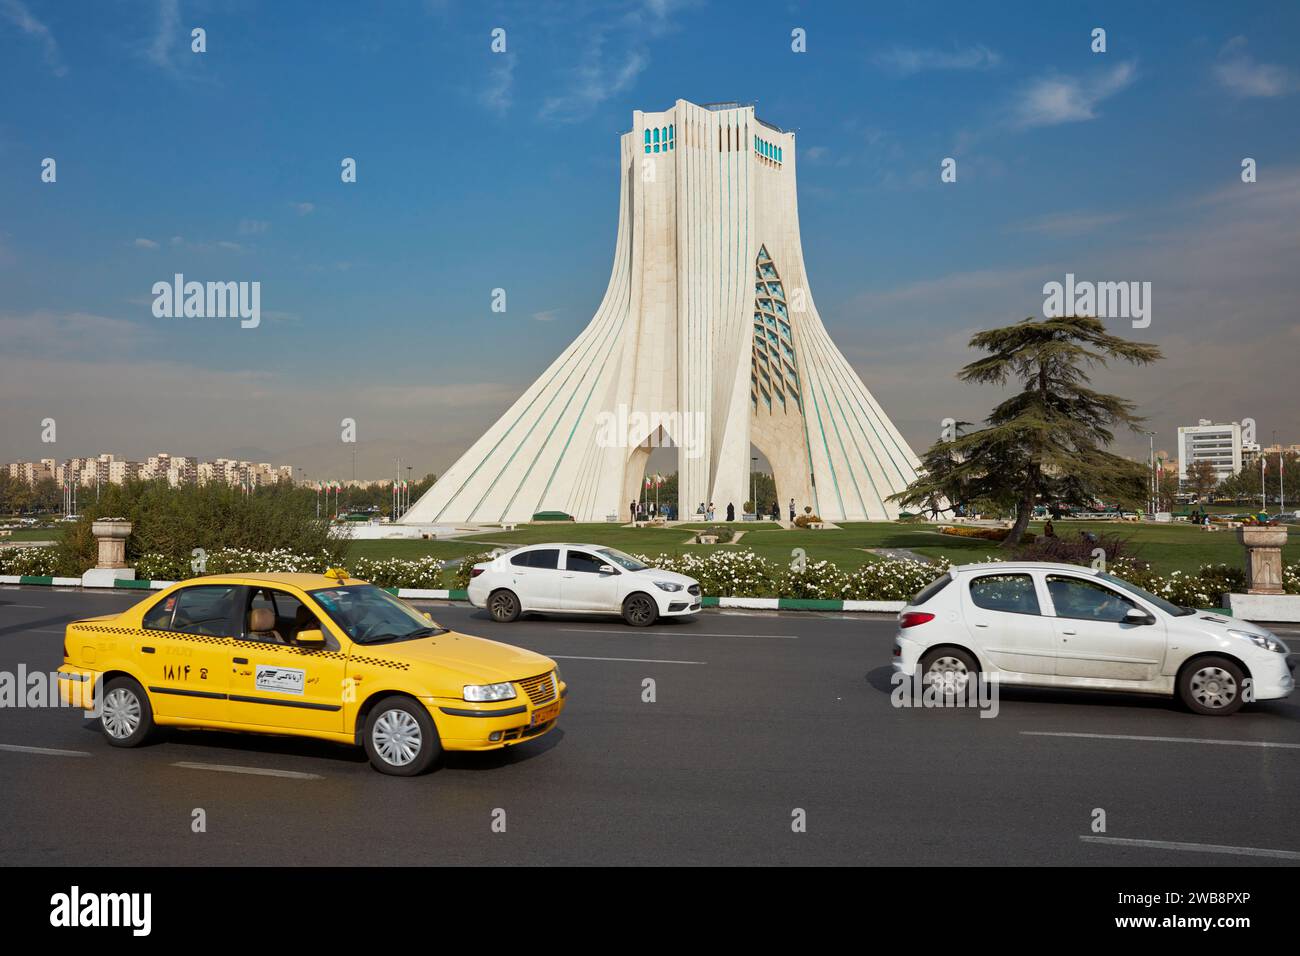 Voitures passant devant la tour Azadi (Tour de la liberté), un monument emblématique de Téhéran, Iran. Banque D'Images